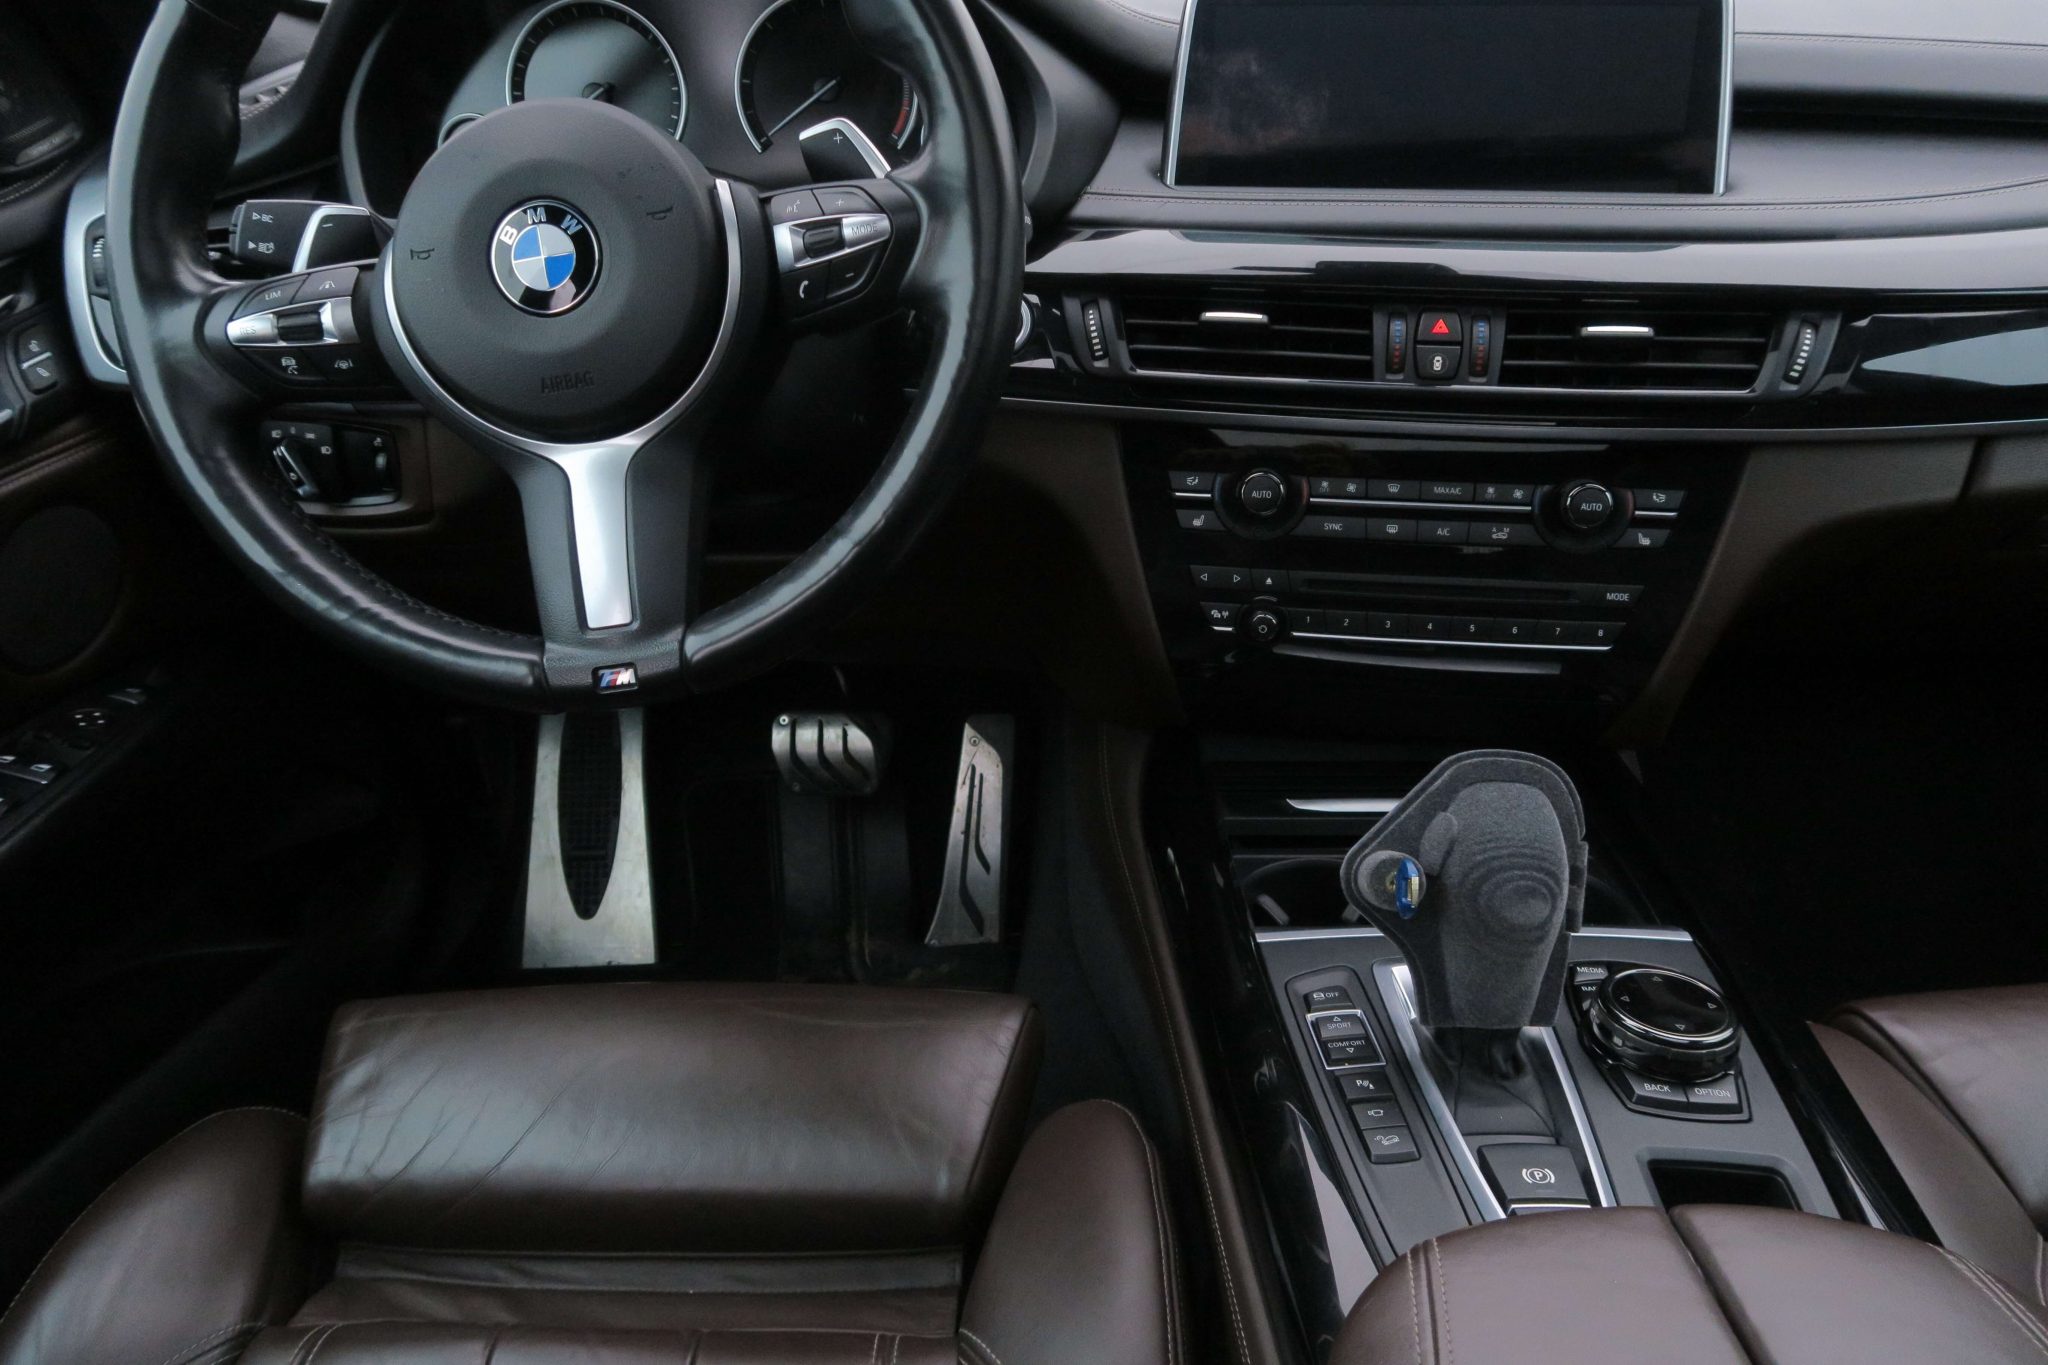 JOYLOCK BMW Blokada skrzyni biegów BMW